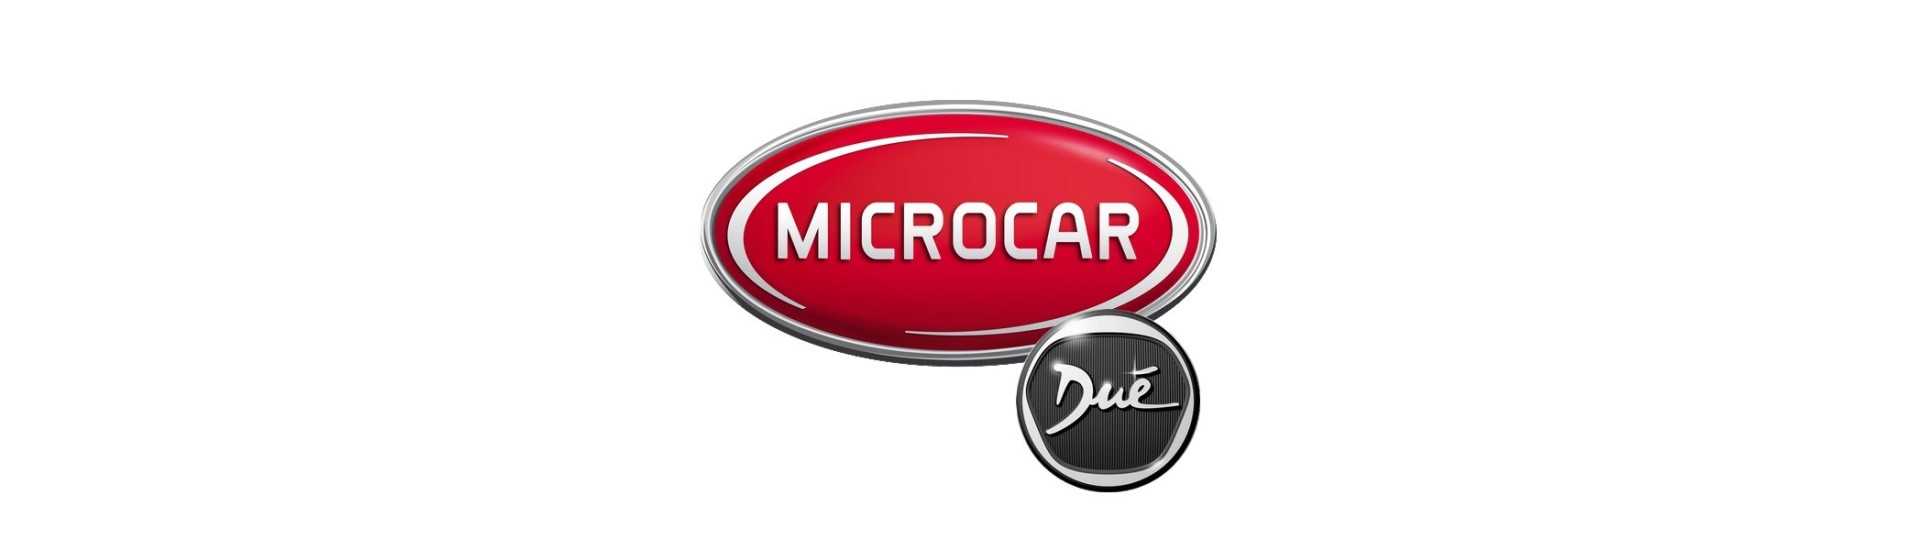 Bästa priset på ett körkort Microcar Dué